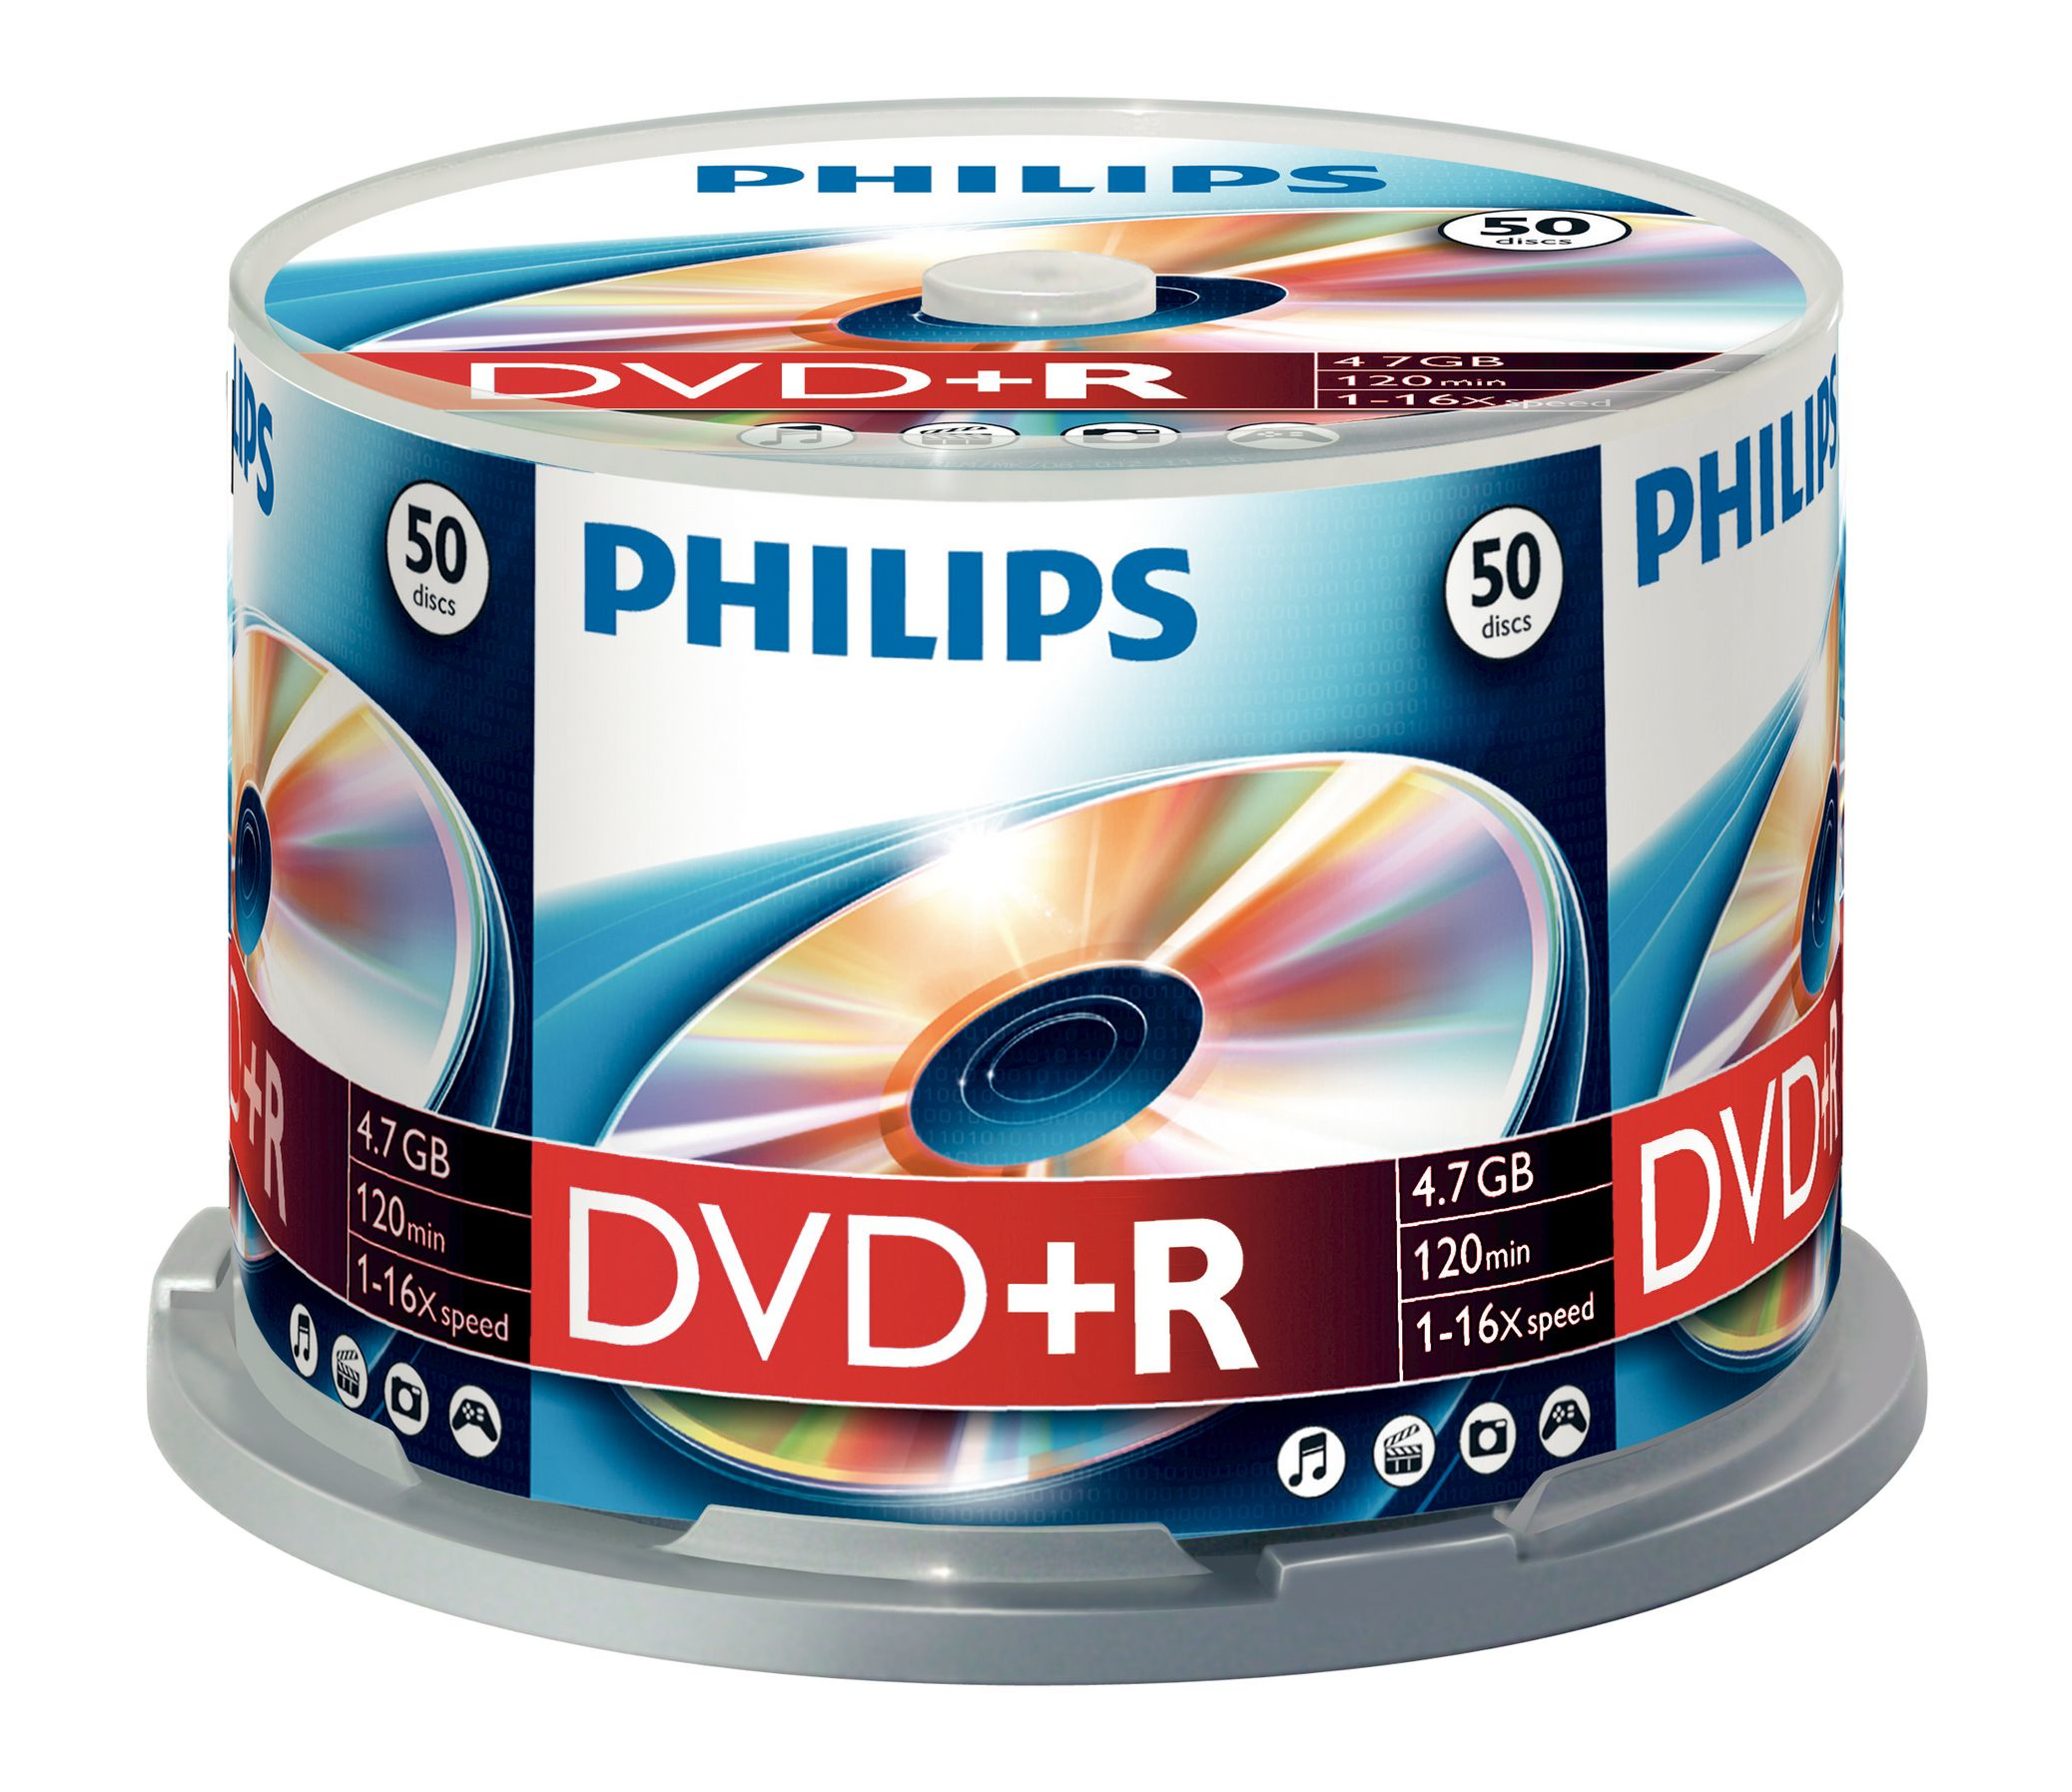 Philips 50 x DVD+R 4.7GB/120 min. DVD+R DR4S6B50F/00, 4.7 GB,  DR4S6B50F/00 - eet01